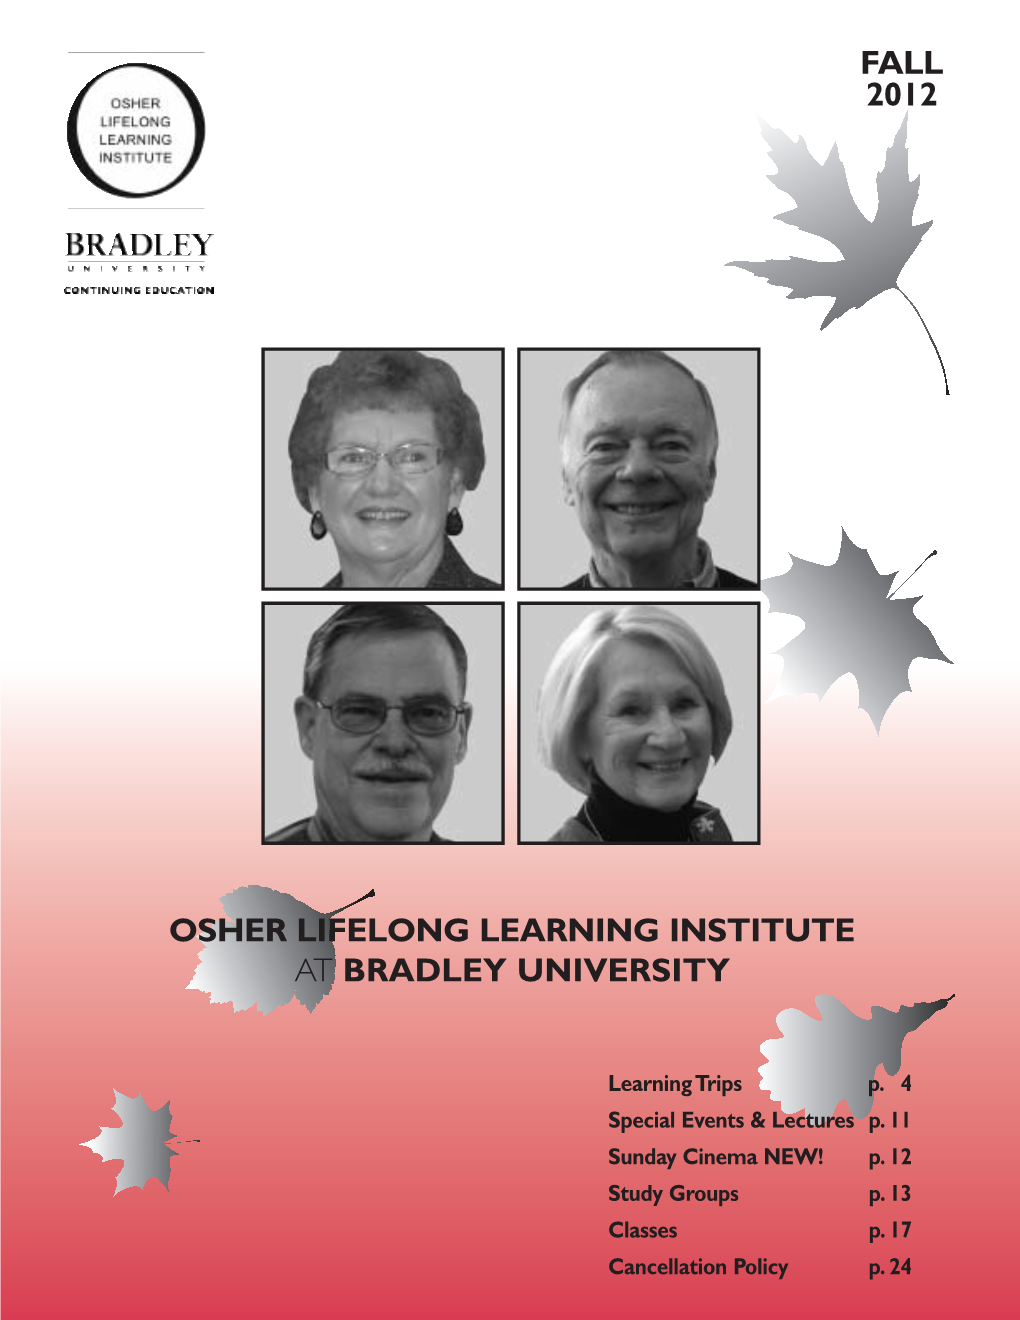 Osher Lifelong Learning Institute at Bradley University